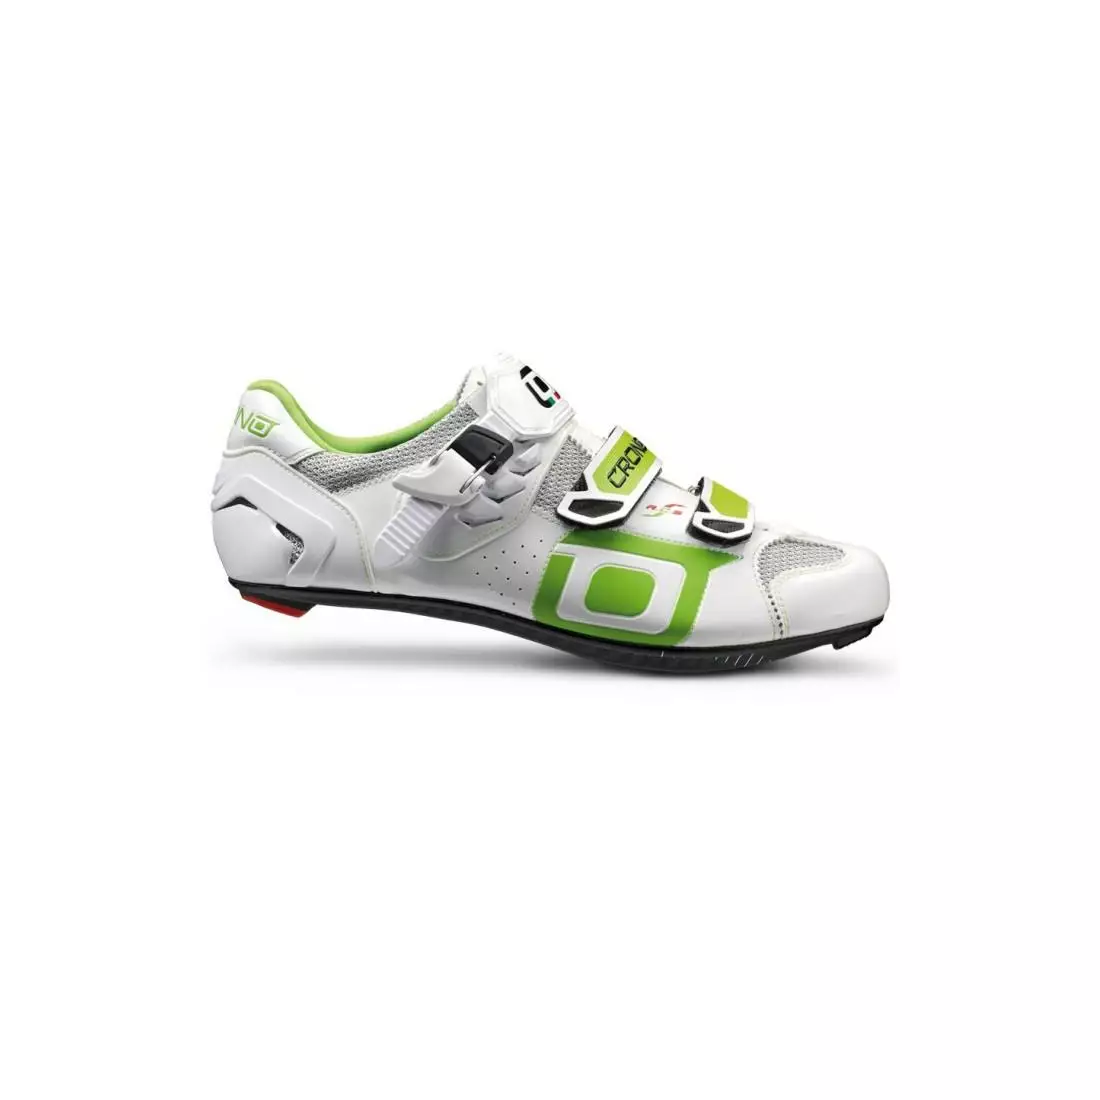 CRONO CLONE NYLON - silniční cyklistické boty - barva: bílá/zelená